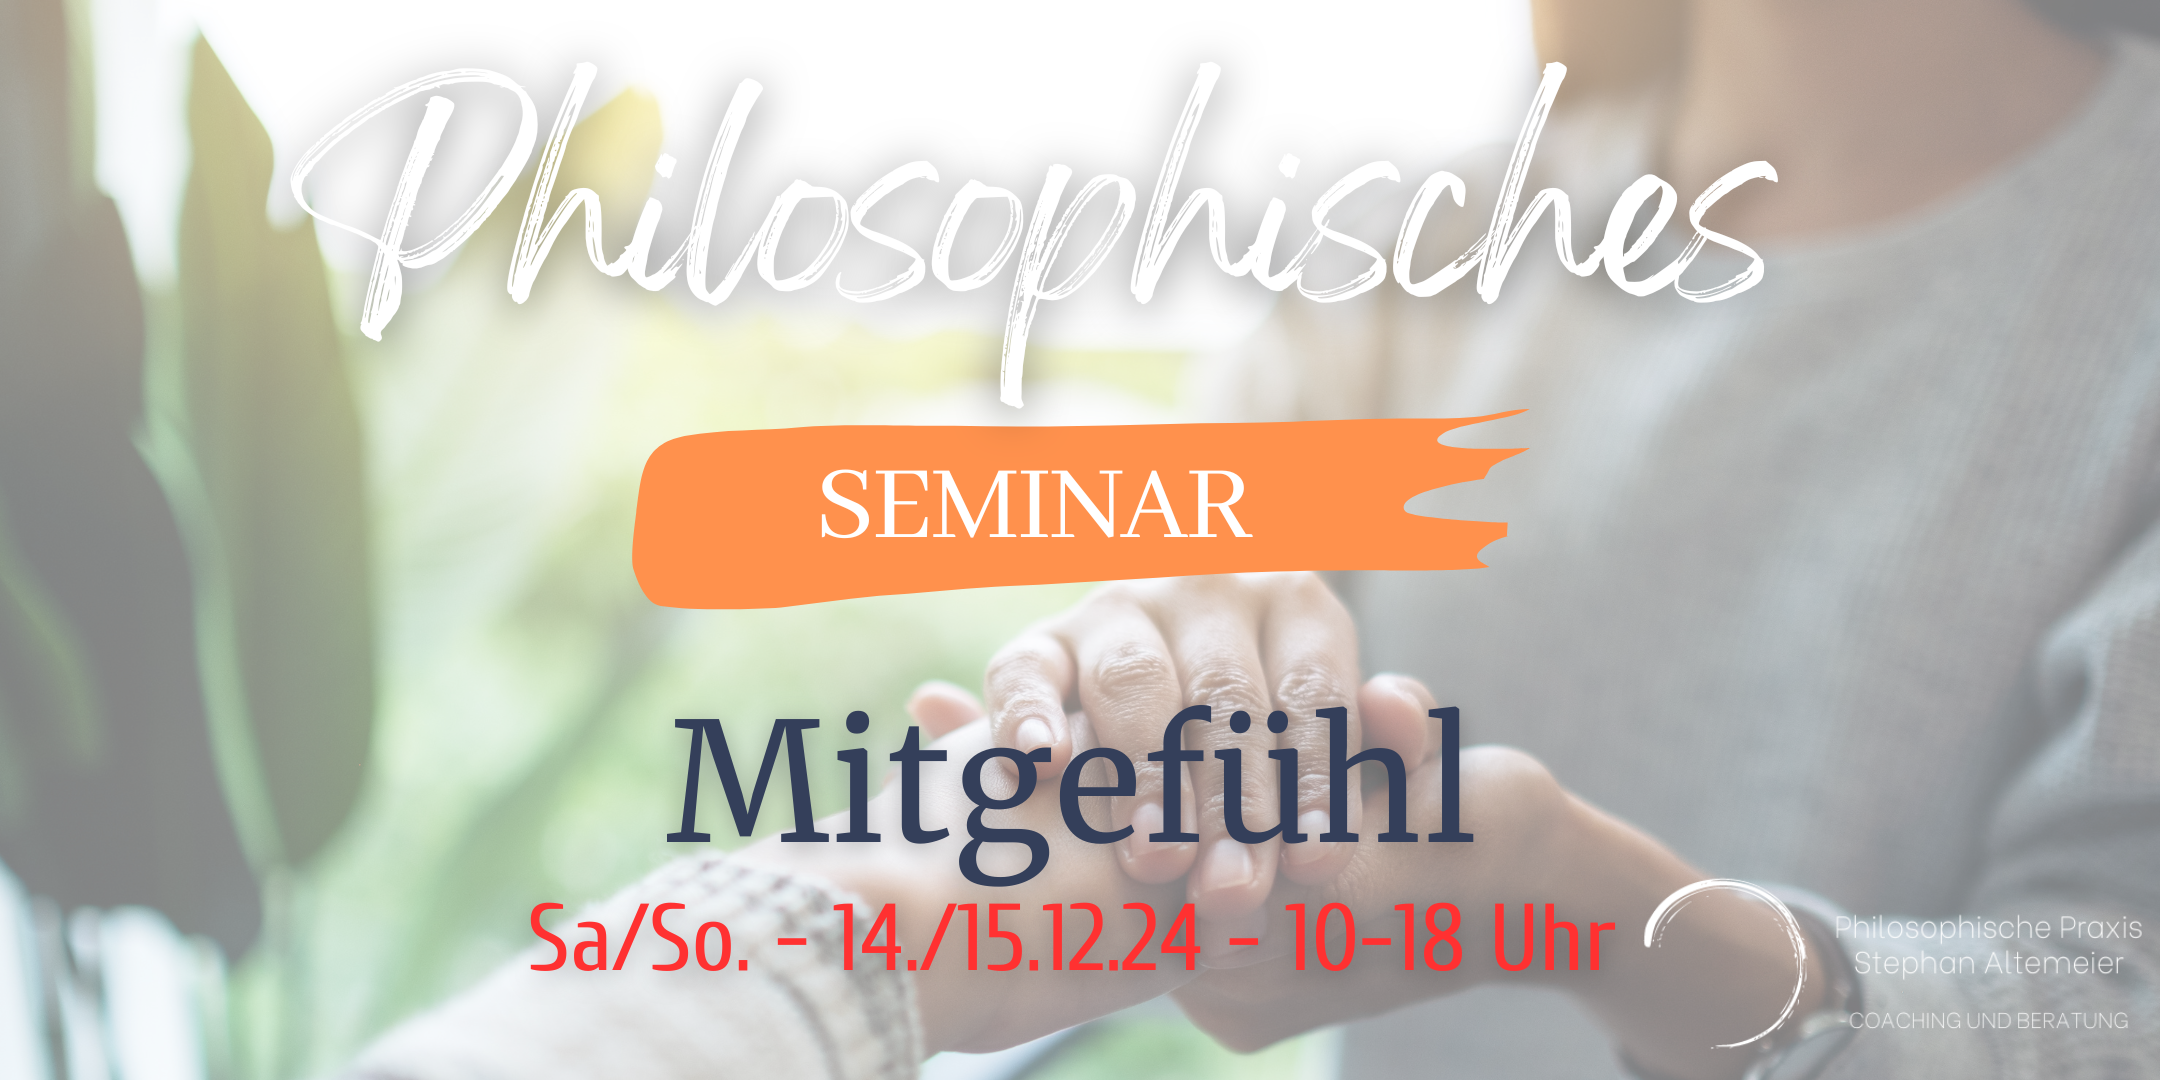 Philosophisches Seminar Düsseldorf Mitgefühl